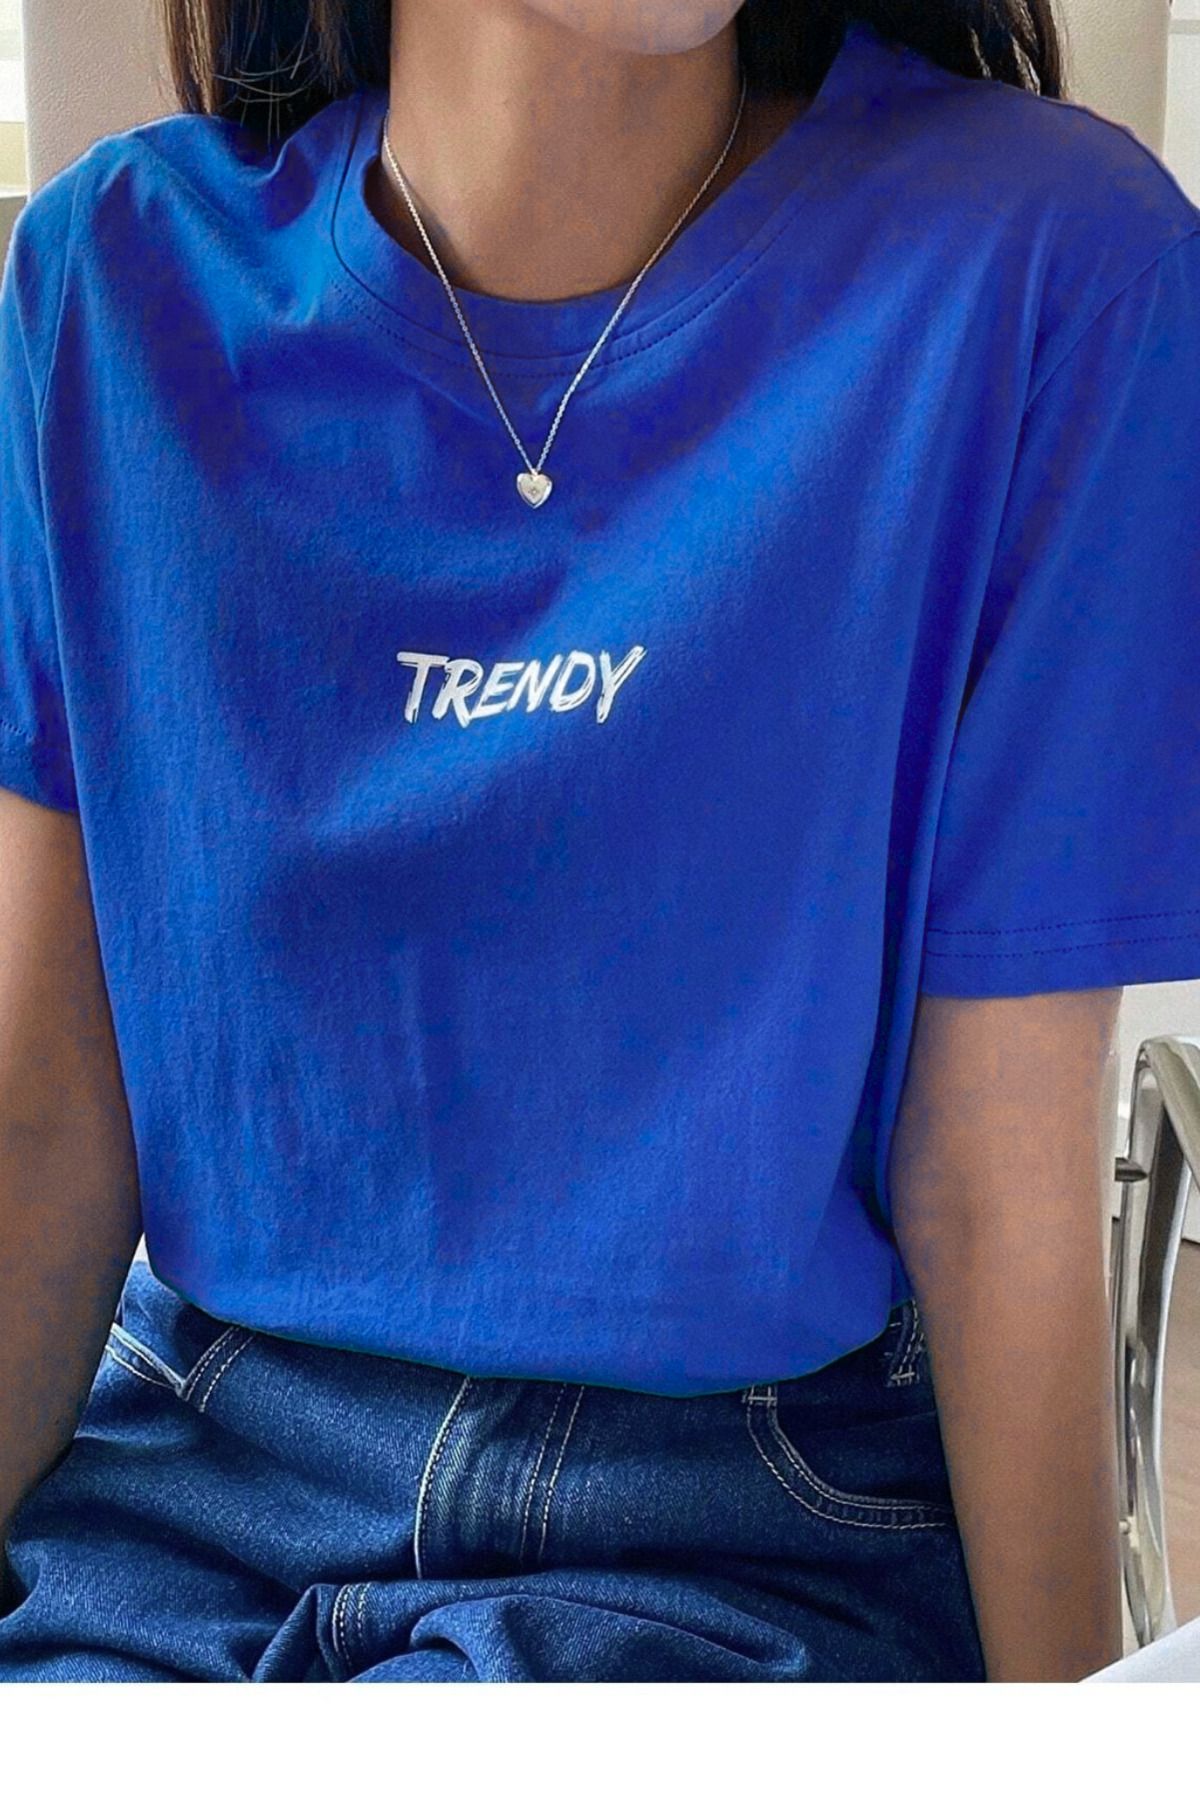 DUBU BUTİK Trendy Oversize Saks Mavi Baskılı T-shirt Unisex Rahat Kalıp - Bisiklet Yaka Kısa Kol Tişört